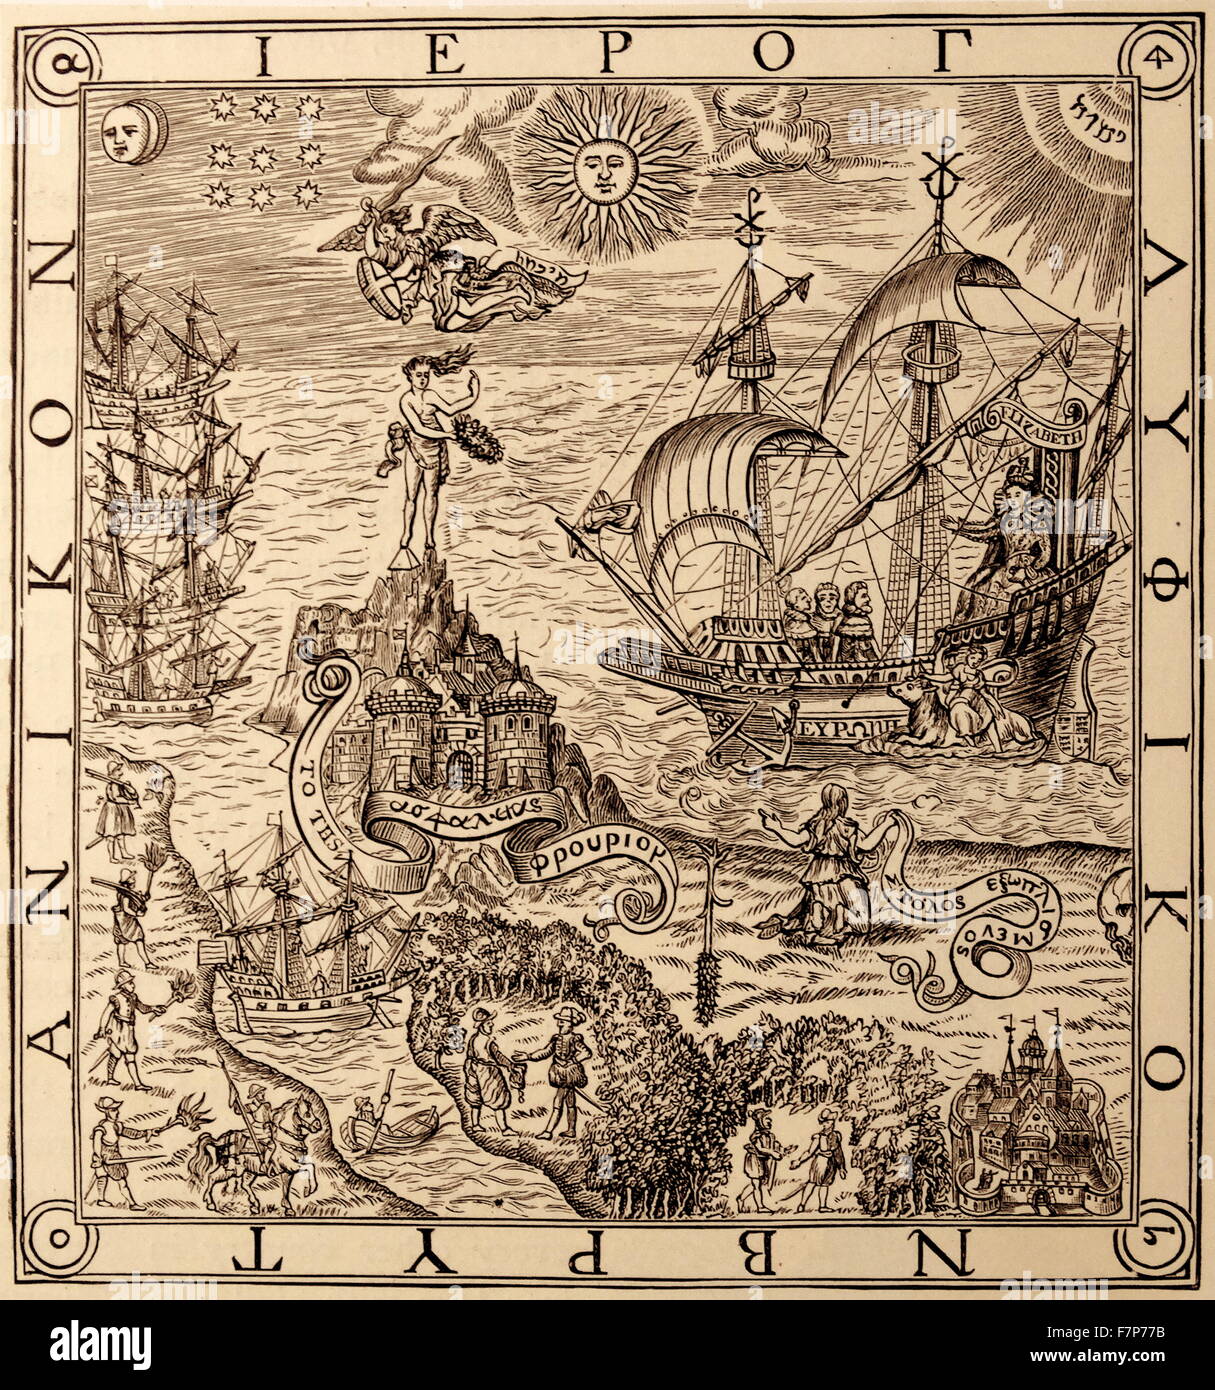 Un jeroglifo de Bretaña frontispicio a John Dee del "Arte de la navegación" AD 1577 Foto de stock